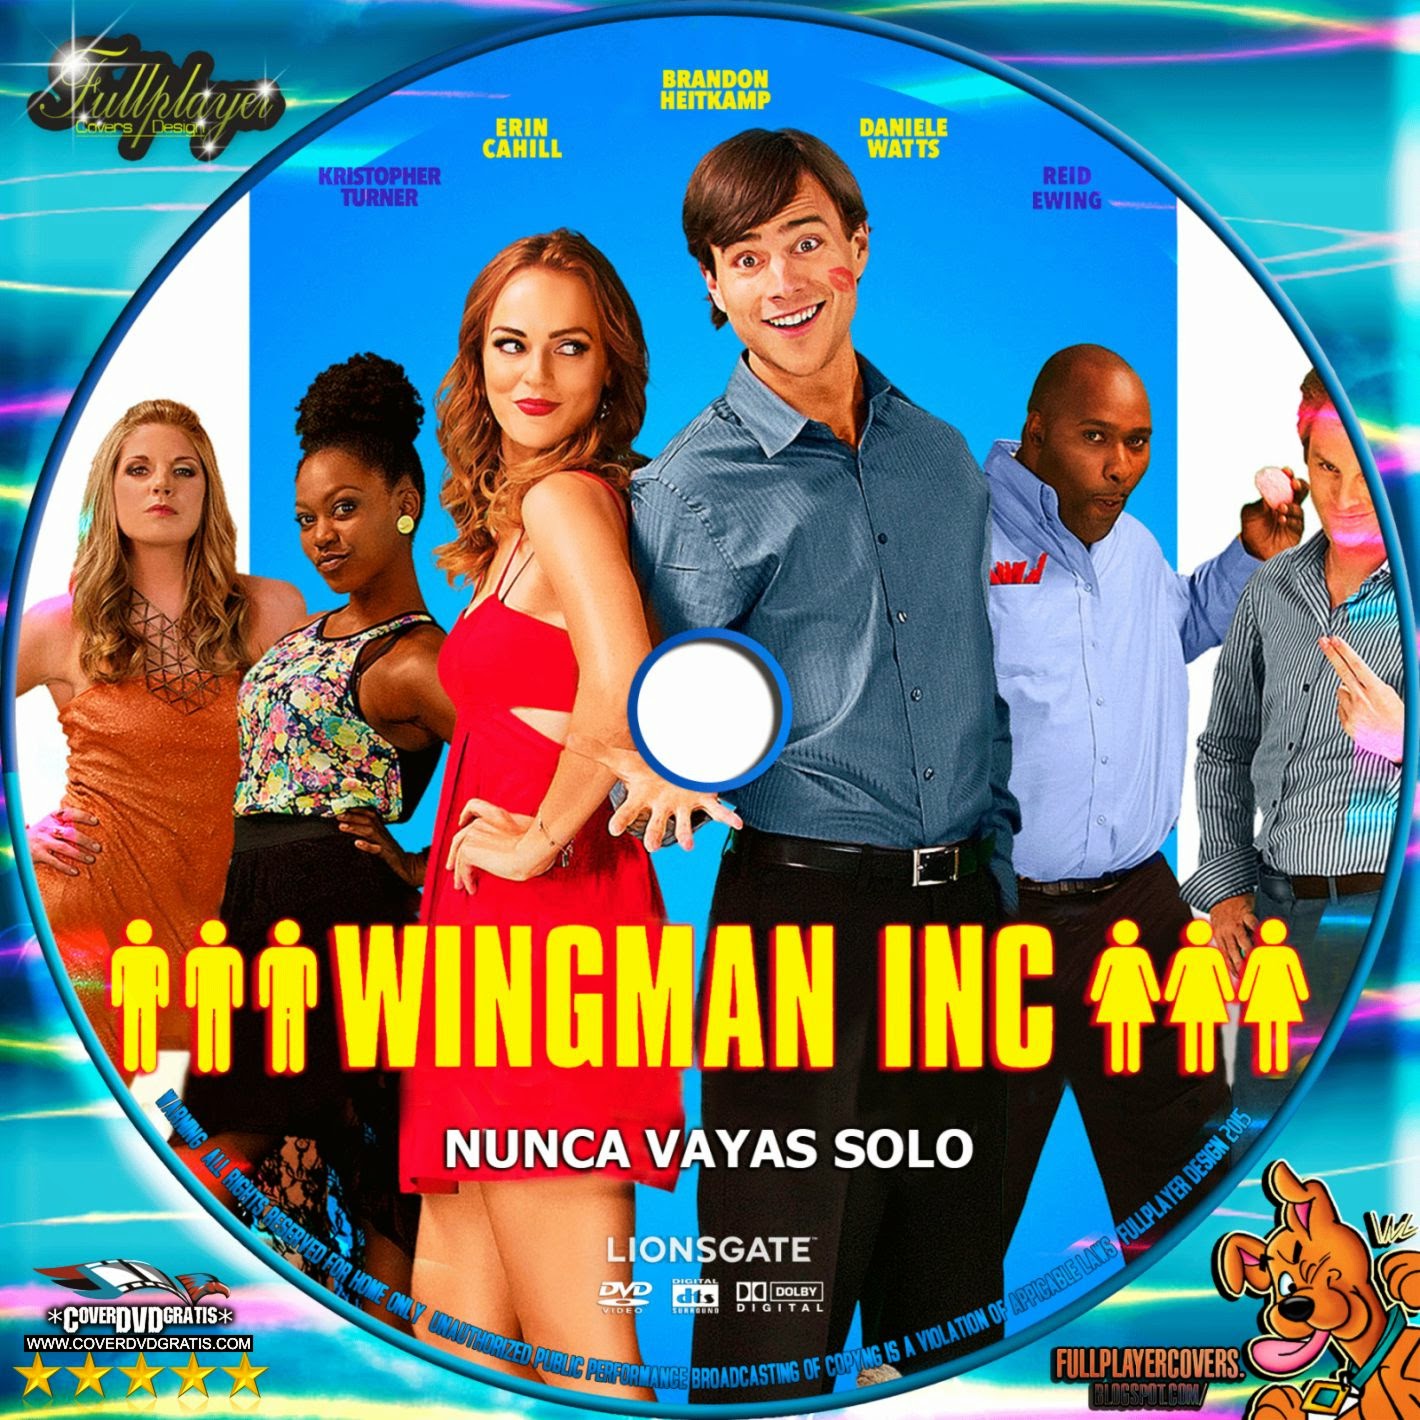 Wingman dvd